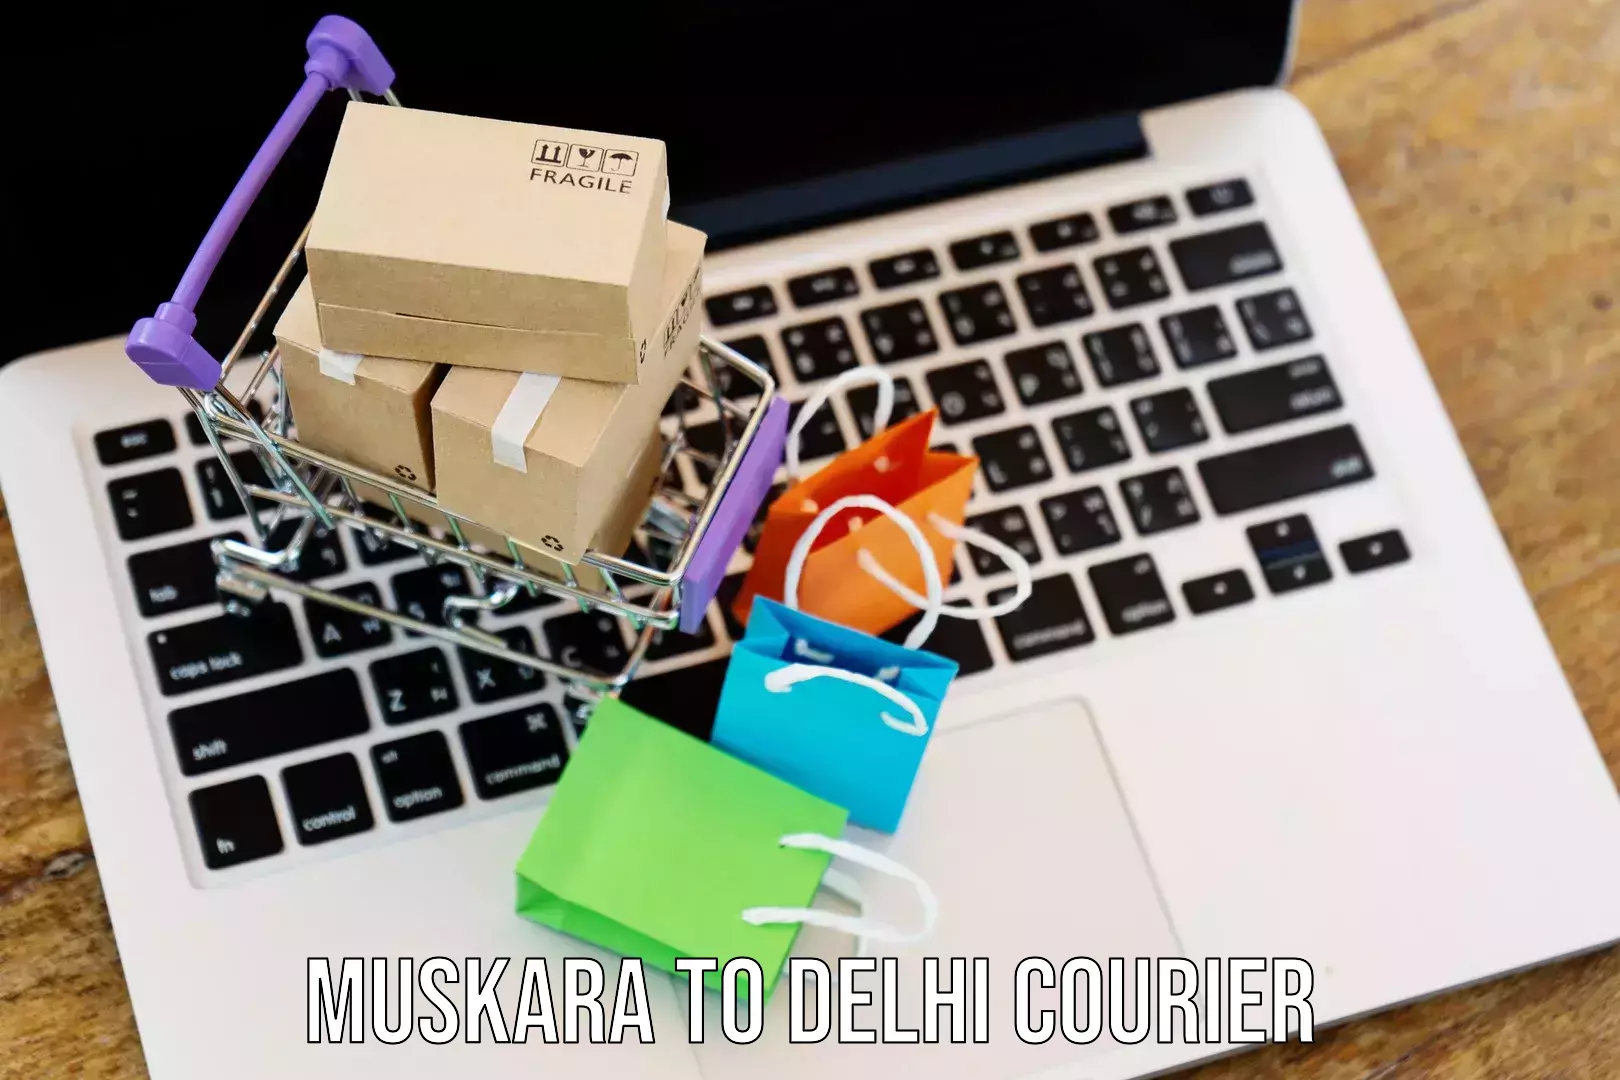 Easy access courier services Muskara to Delhi